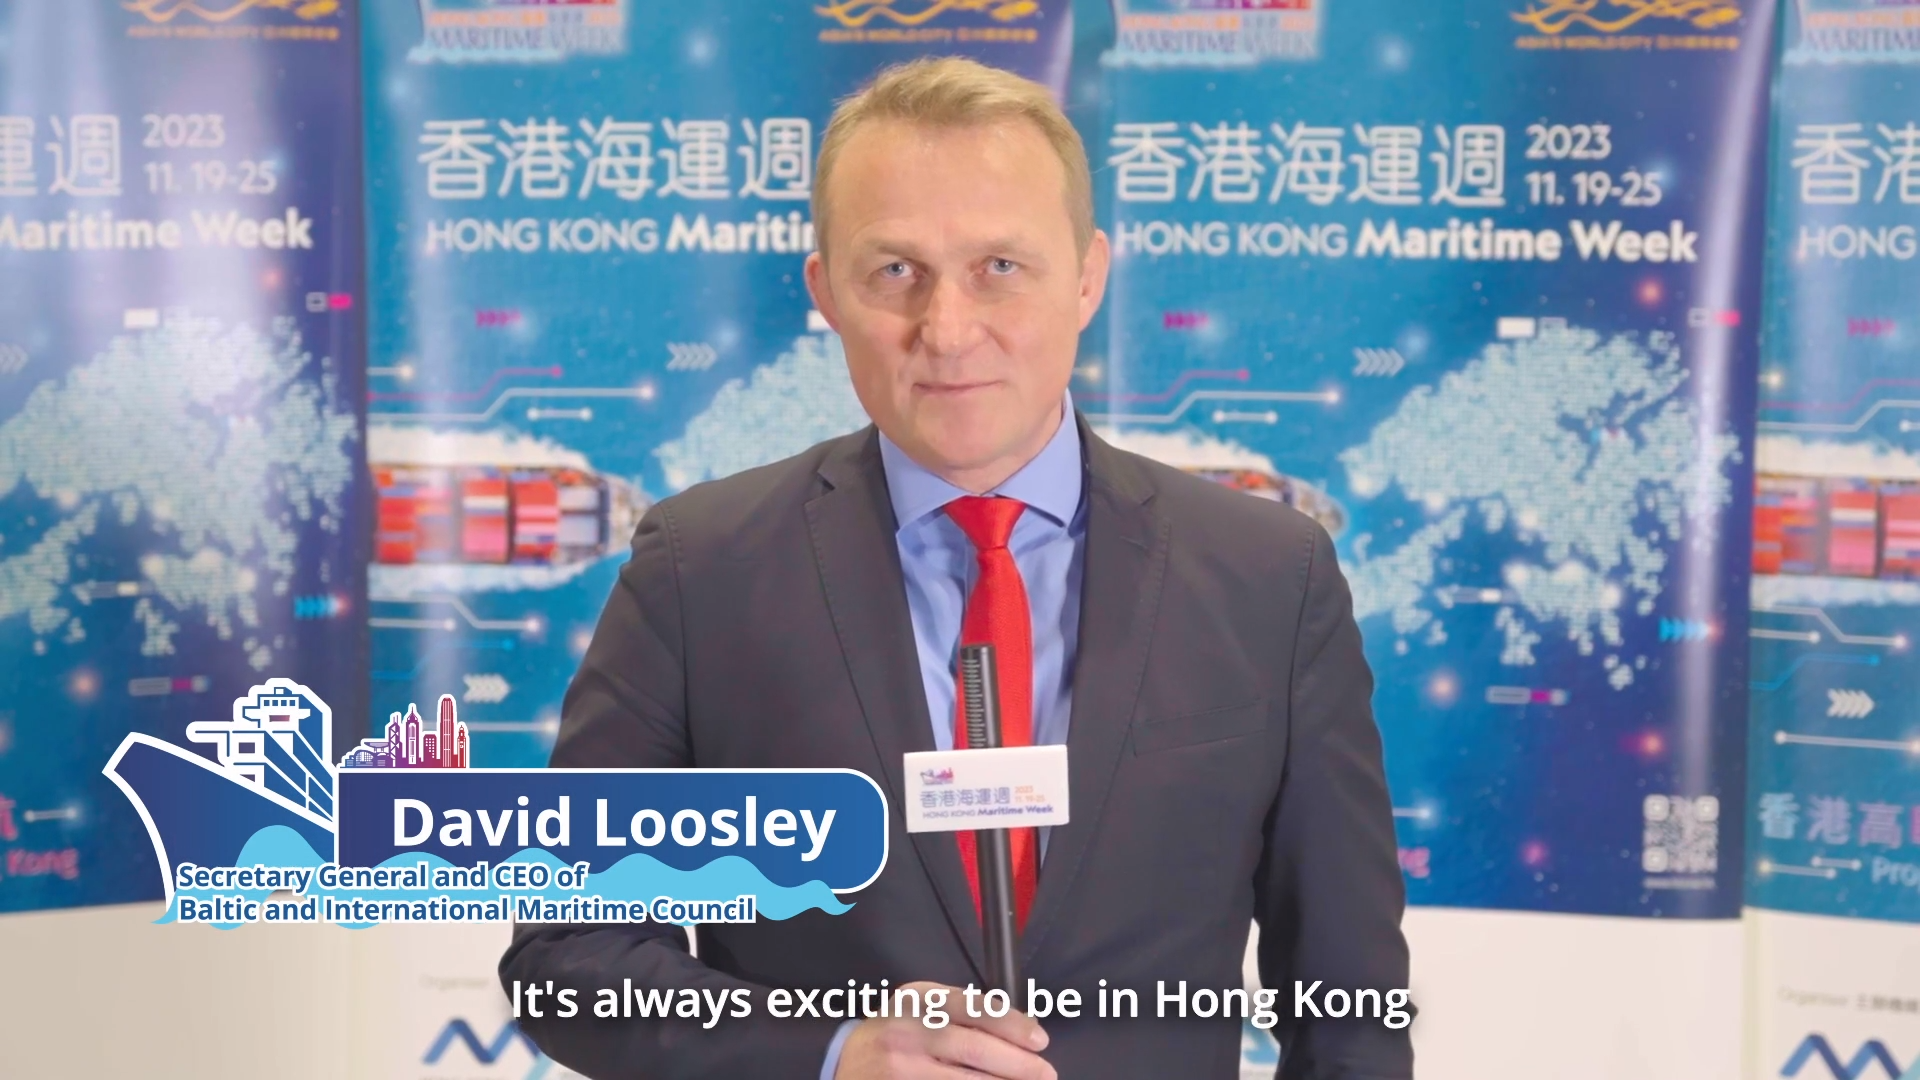 香港海運週2023 - 波羅的海國際航運公會秘書長兼首席執行官David Loosley先生 (只有英文)